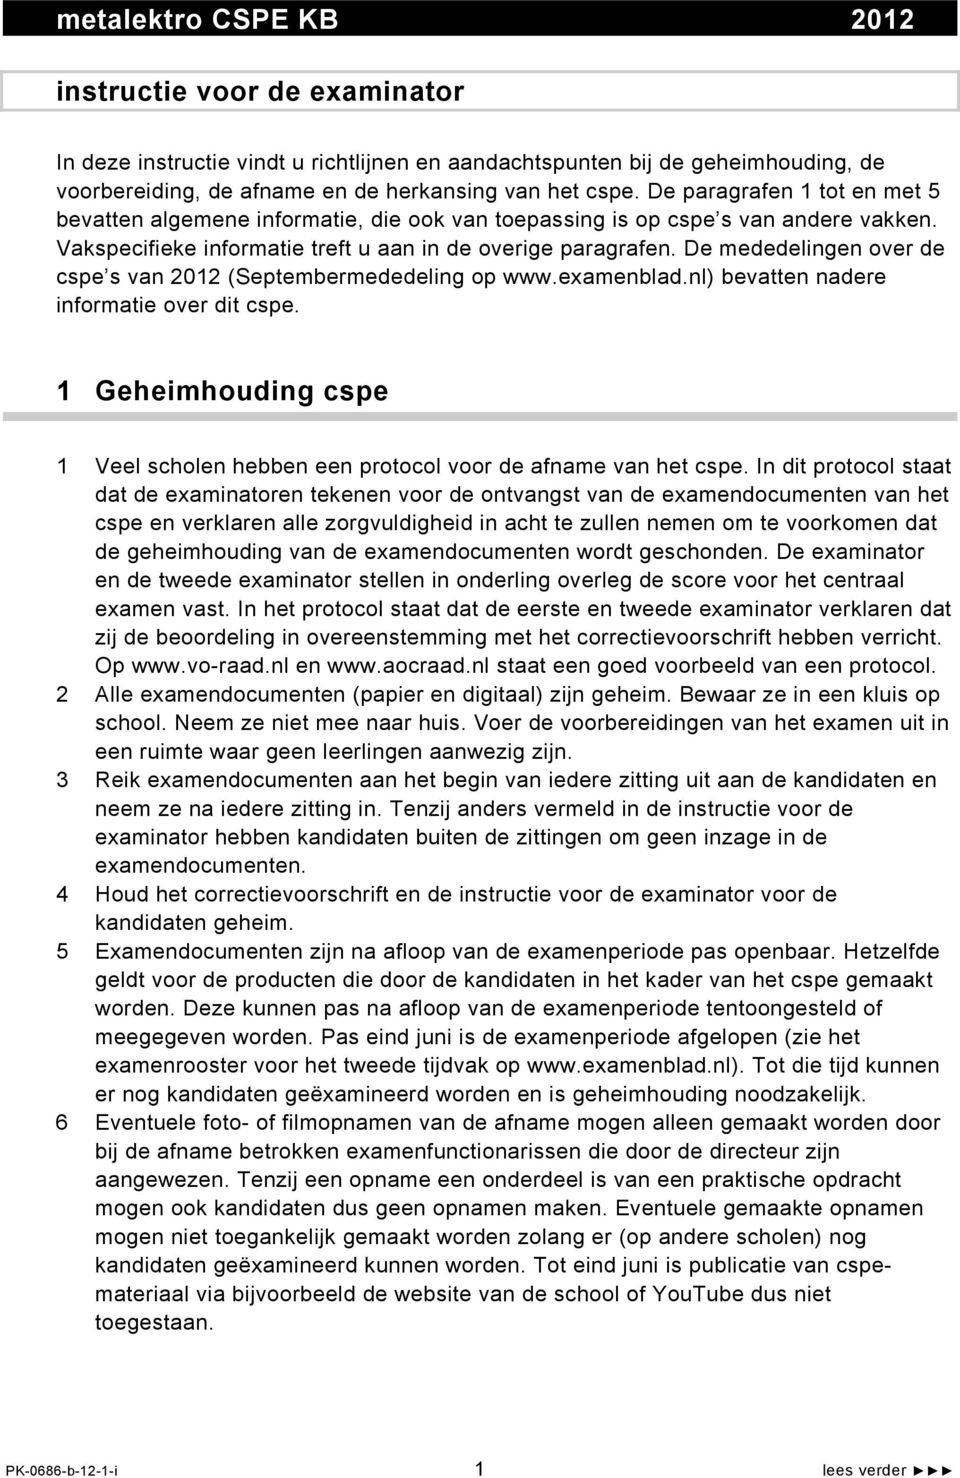 De mededelingen over de cspe s van 2012 (Septembermededeling op www.examenblad.nl) bevatten nadere informatie over dit cspe.